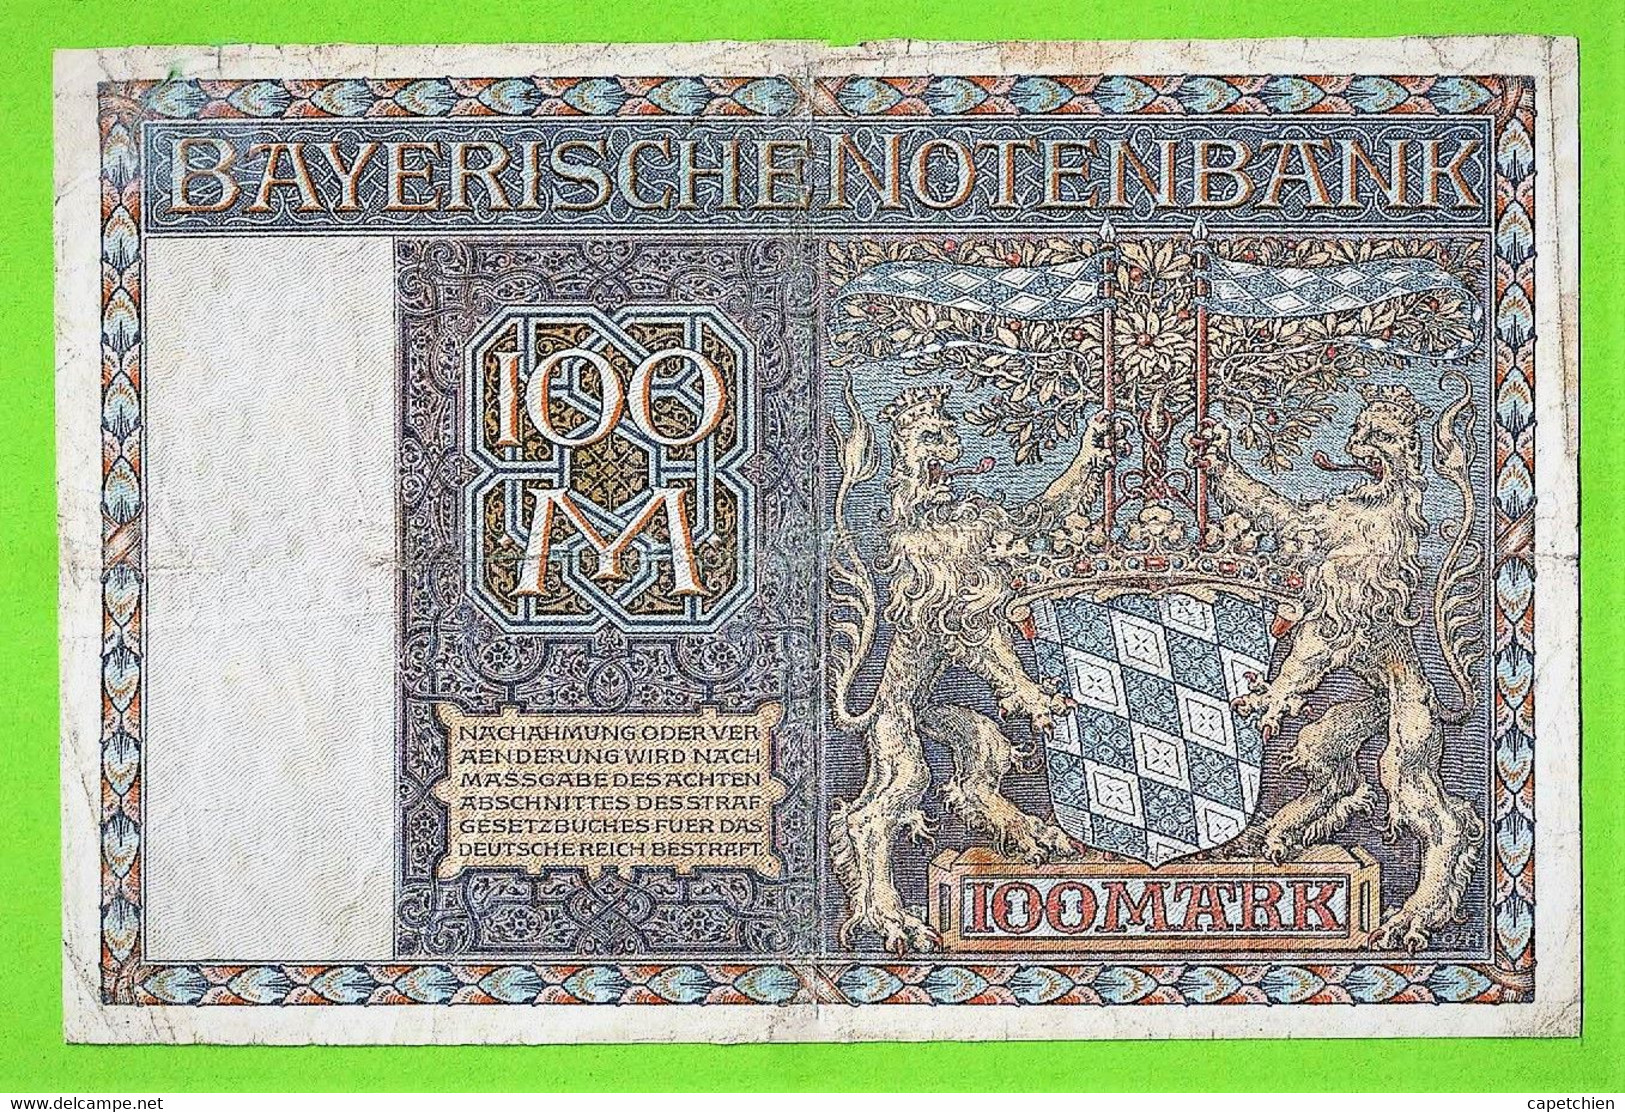 ALLEMAGNE / BAYERISCHE NOTENBANK / 100 MARK / 01 JANVIER 1922 - [ 1] …-1871 : Estados Alemanes